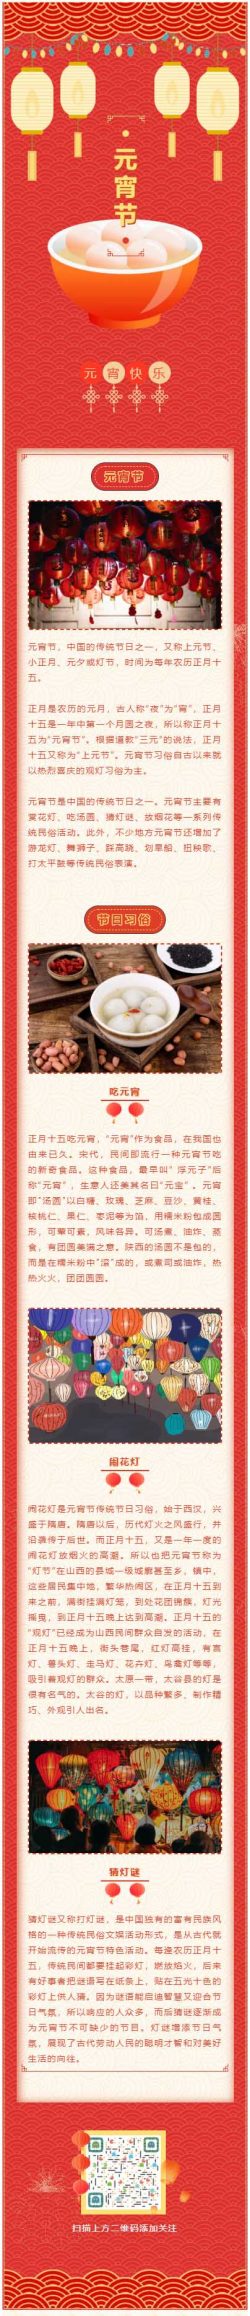 元宵节中国的传统节日之一汤圆猜灯谜公众号推文素材推送文章